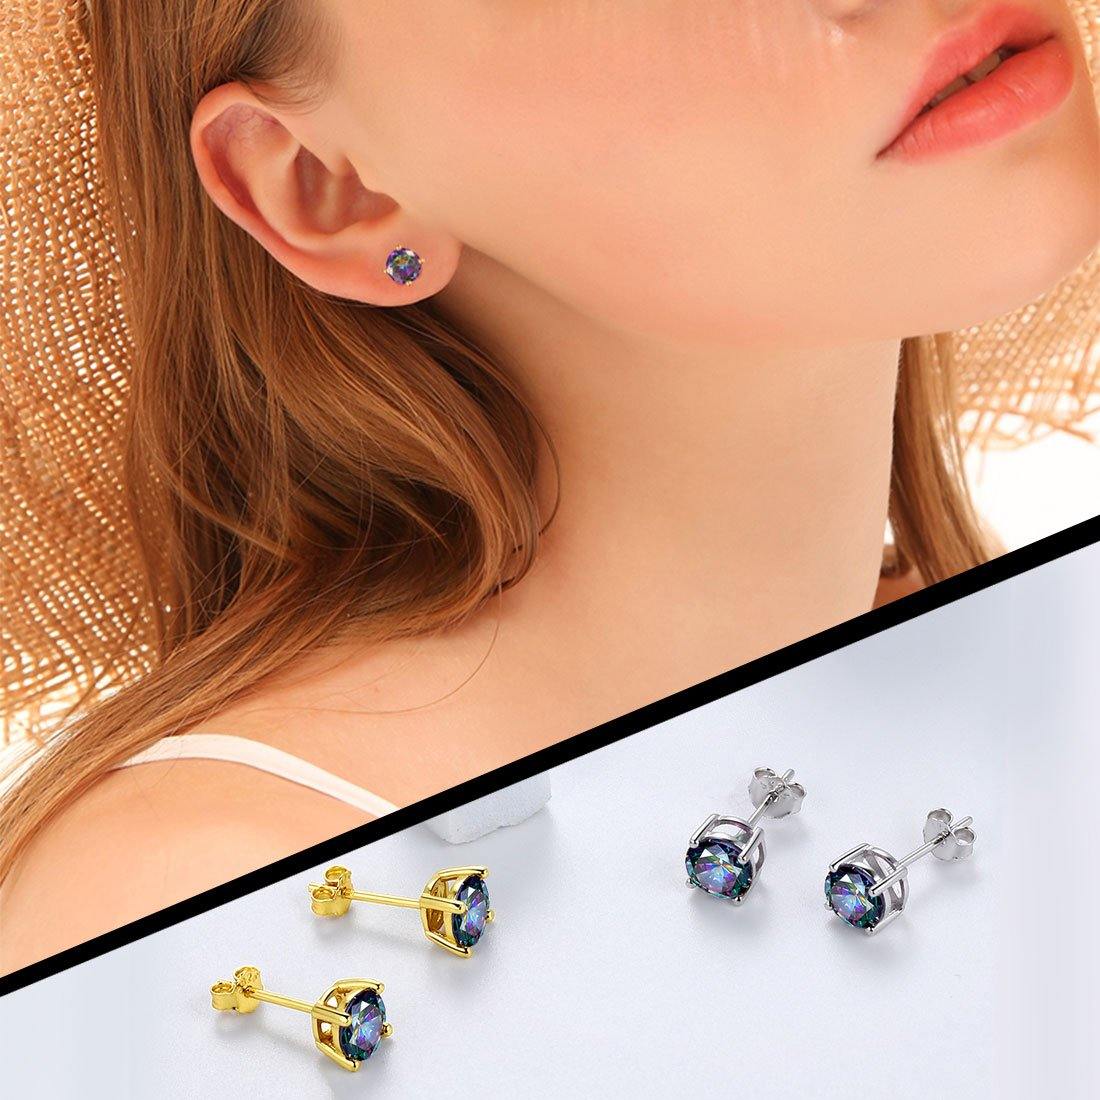 Rainbow Mystic Topaz Earrings Stud Women Girls Jewelry Gifts 925 Sterling Silver - Aurora Tears Jewelry